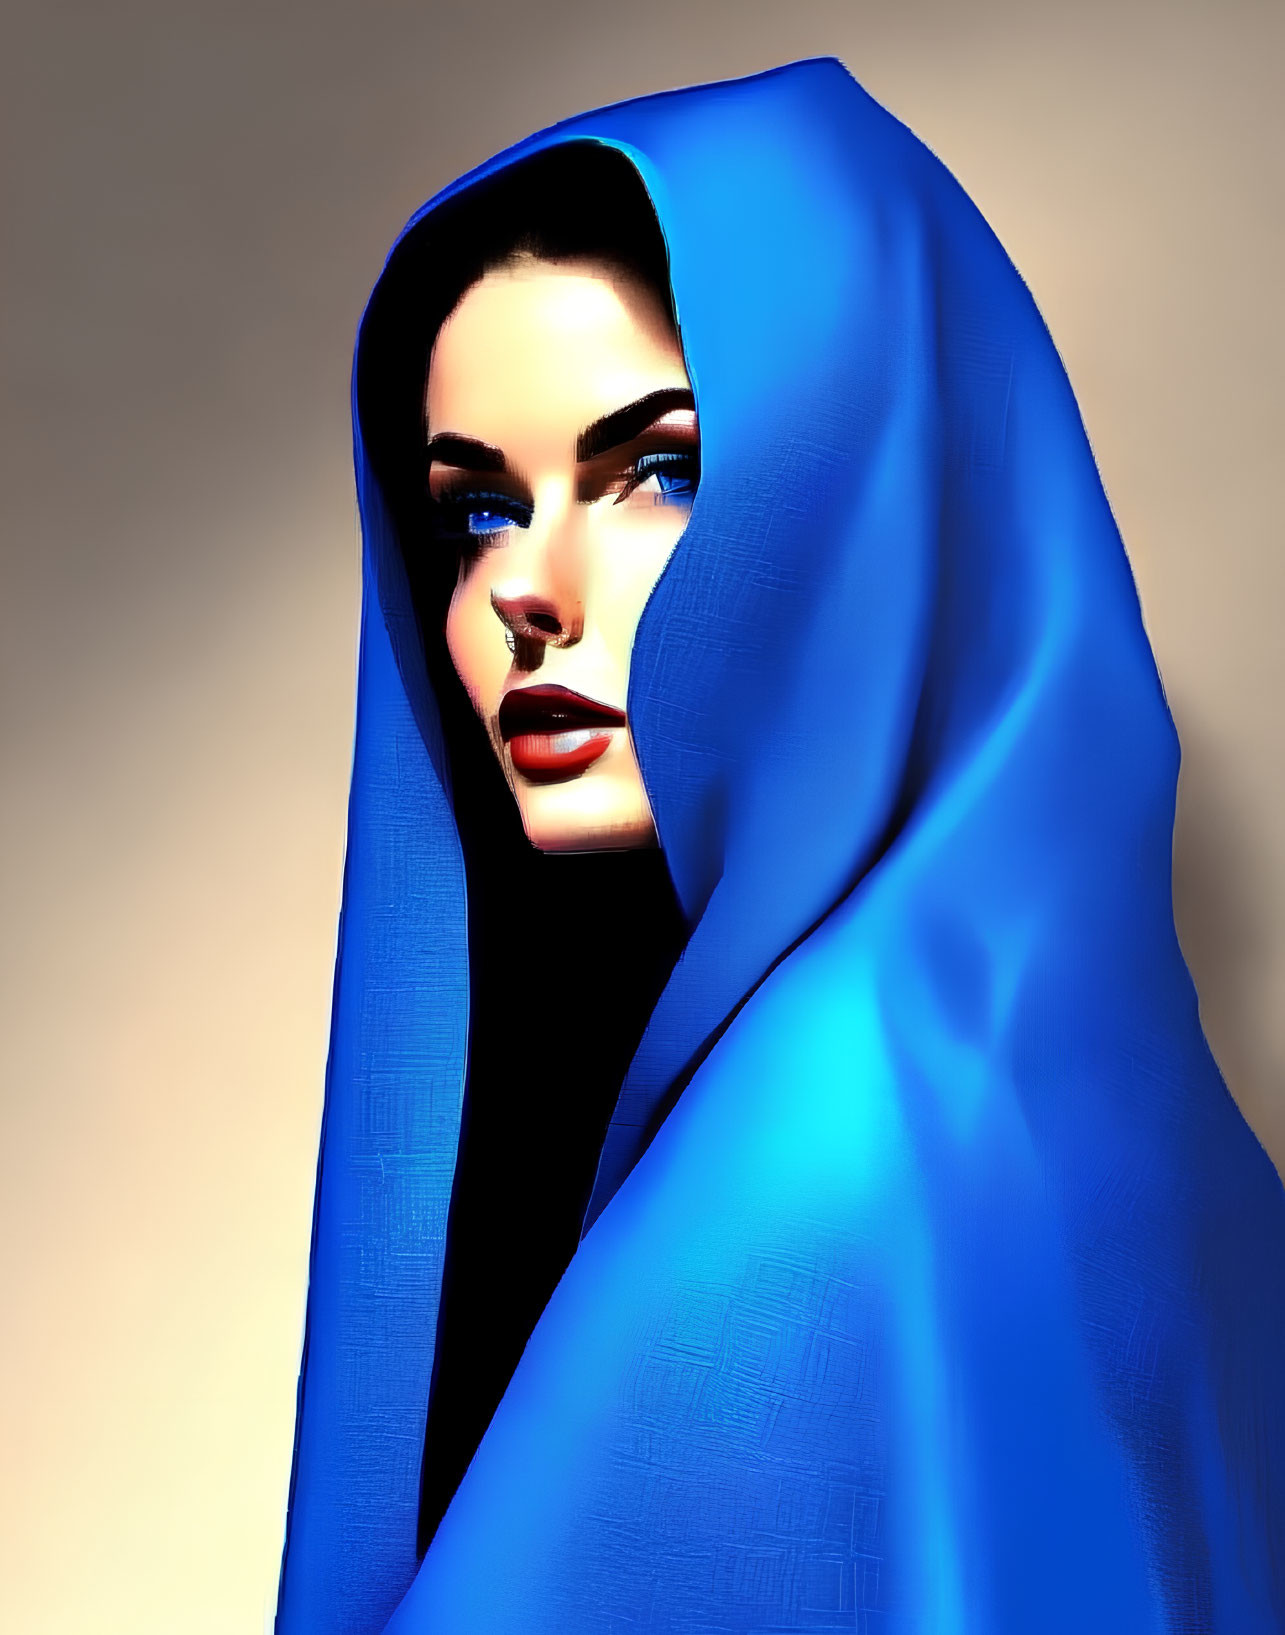 Vibrant blue cloak on woman in digital art portrait